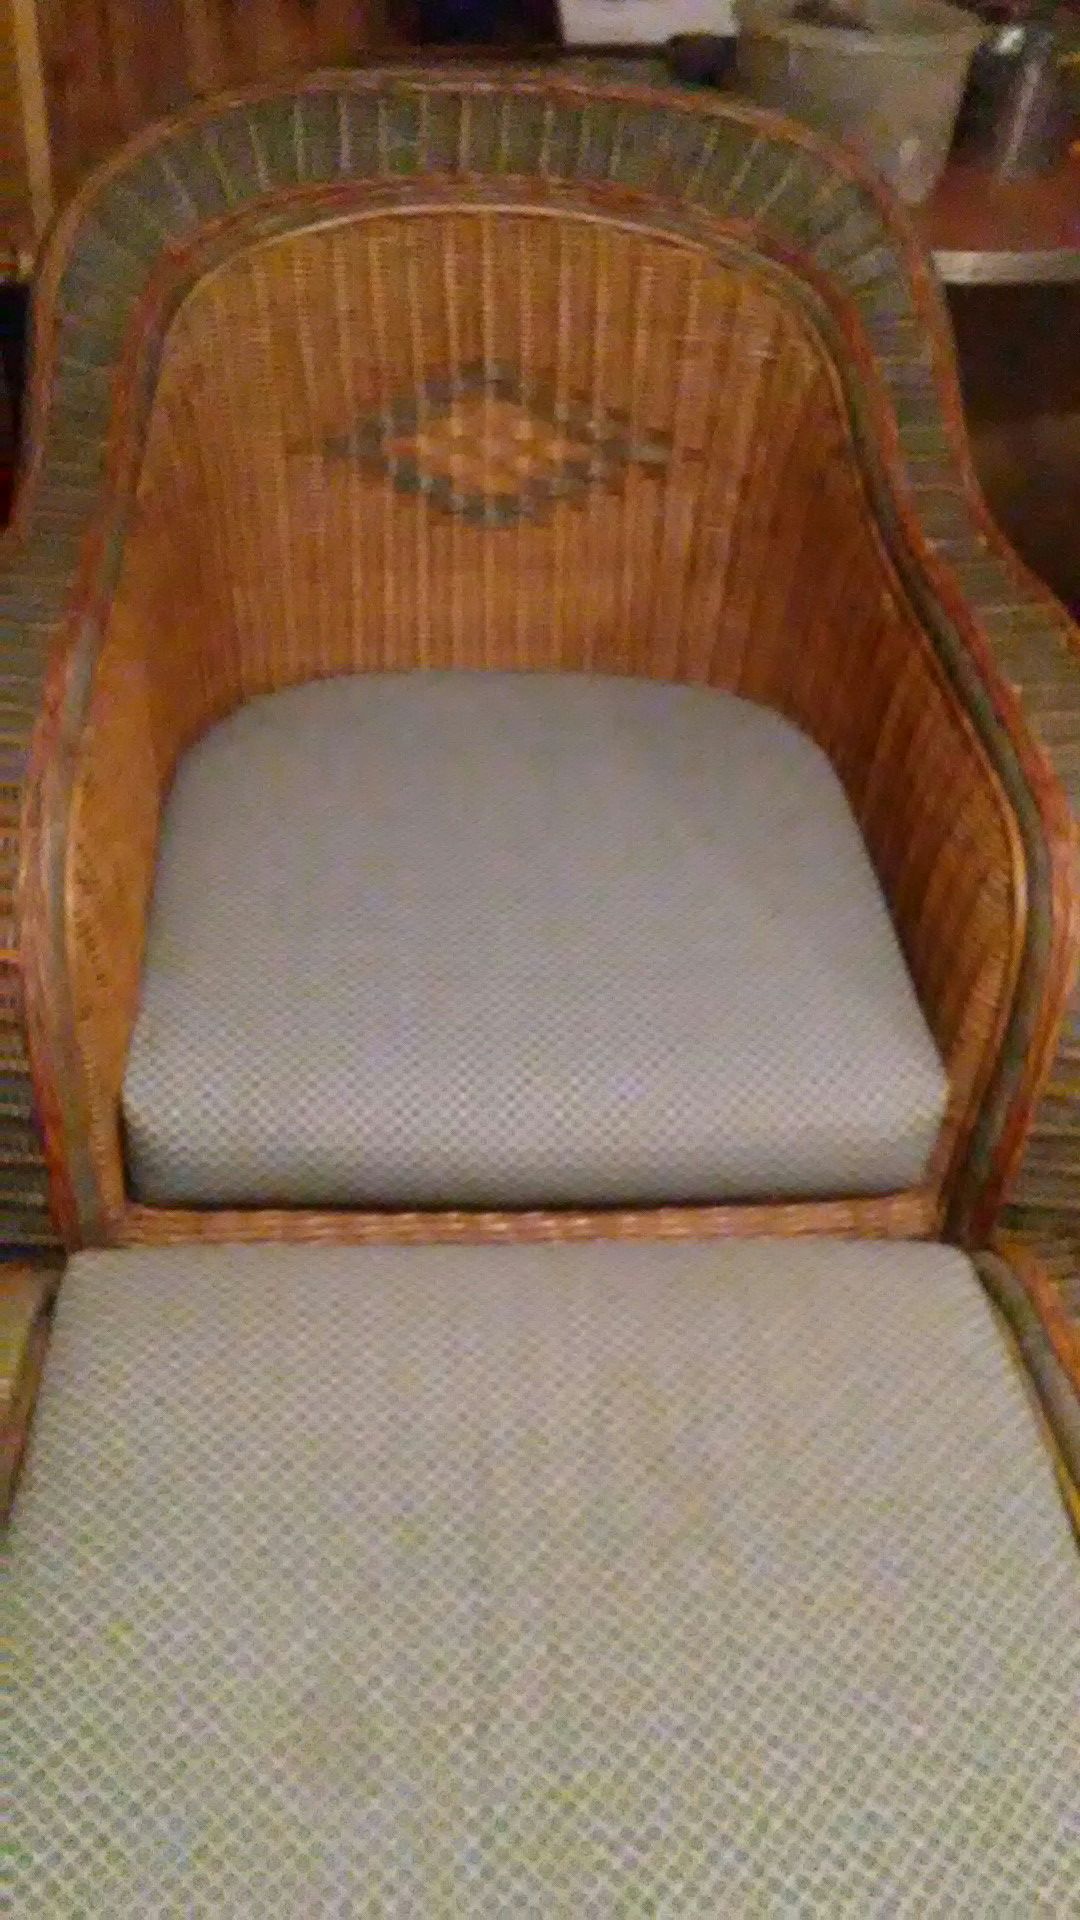 Vintage rattan chair and ottoman